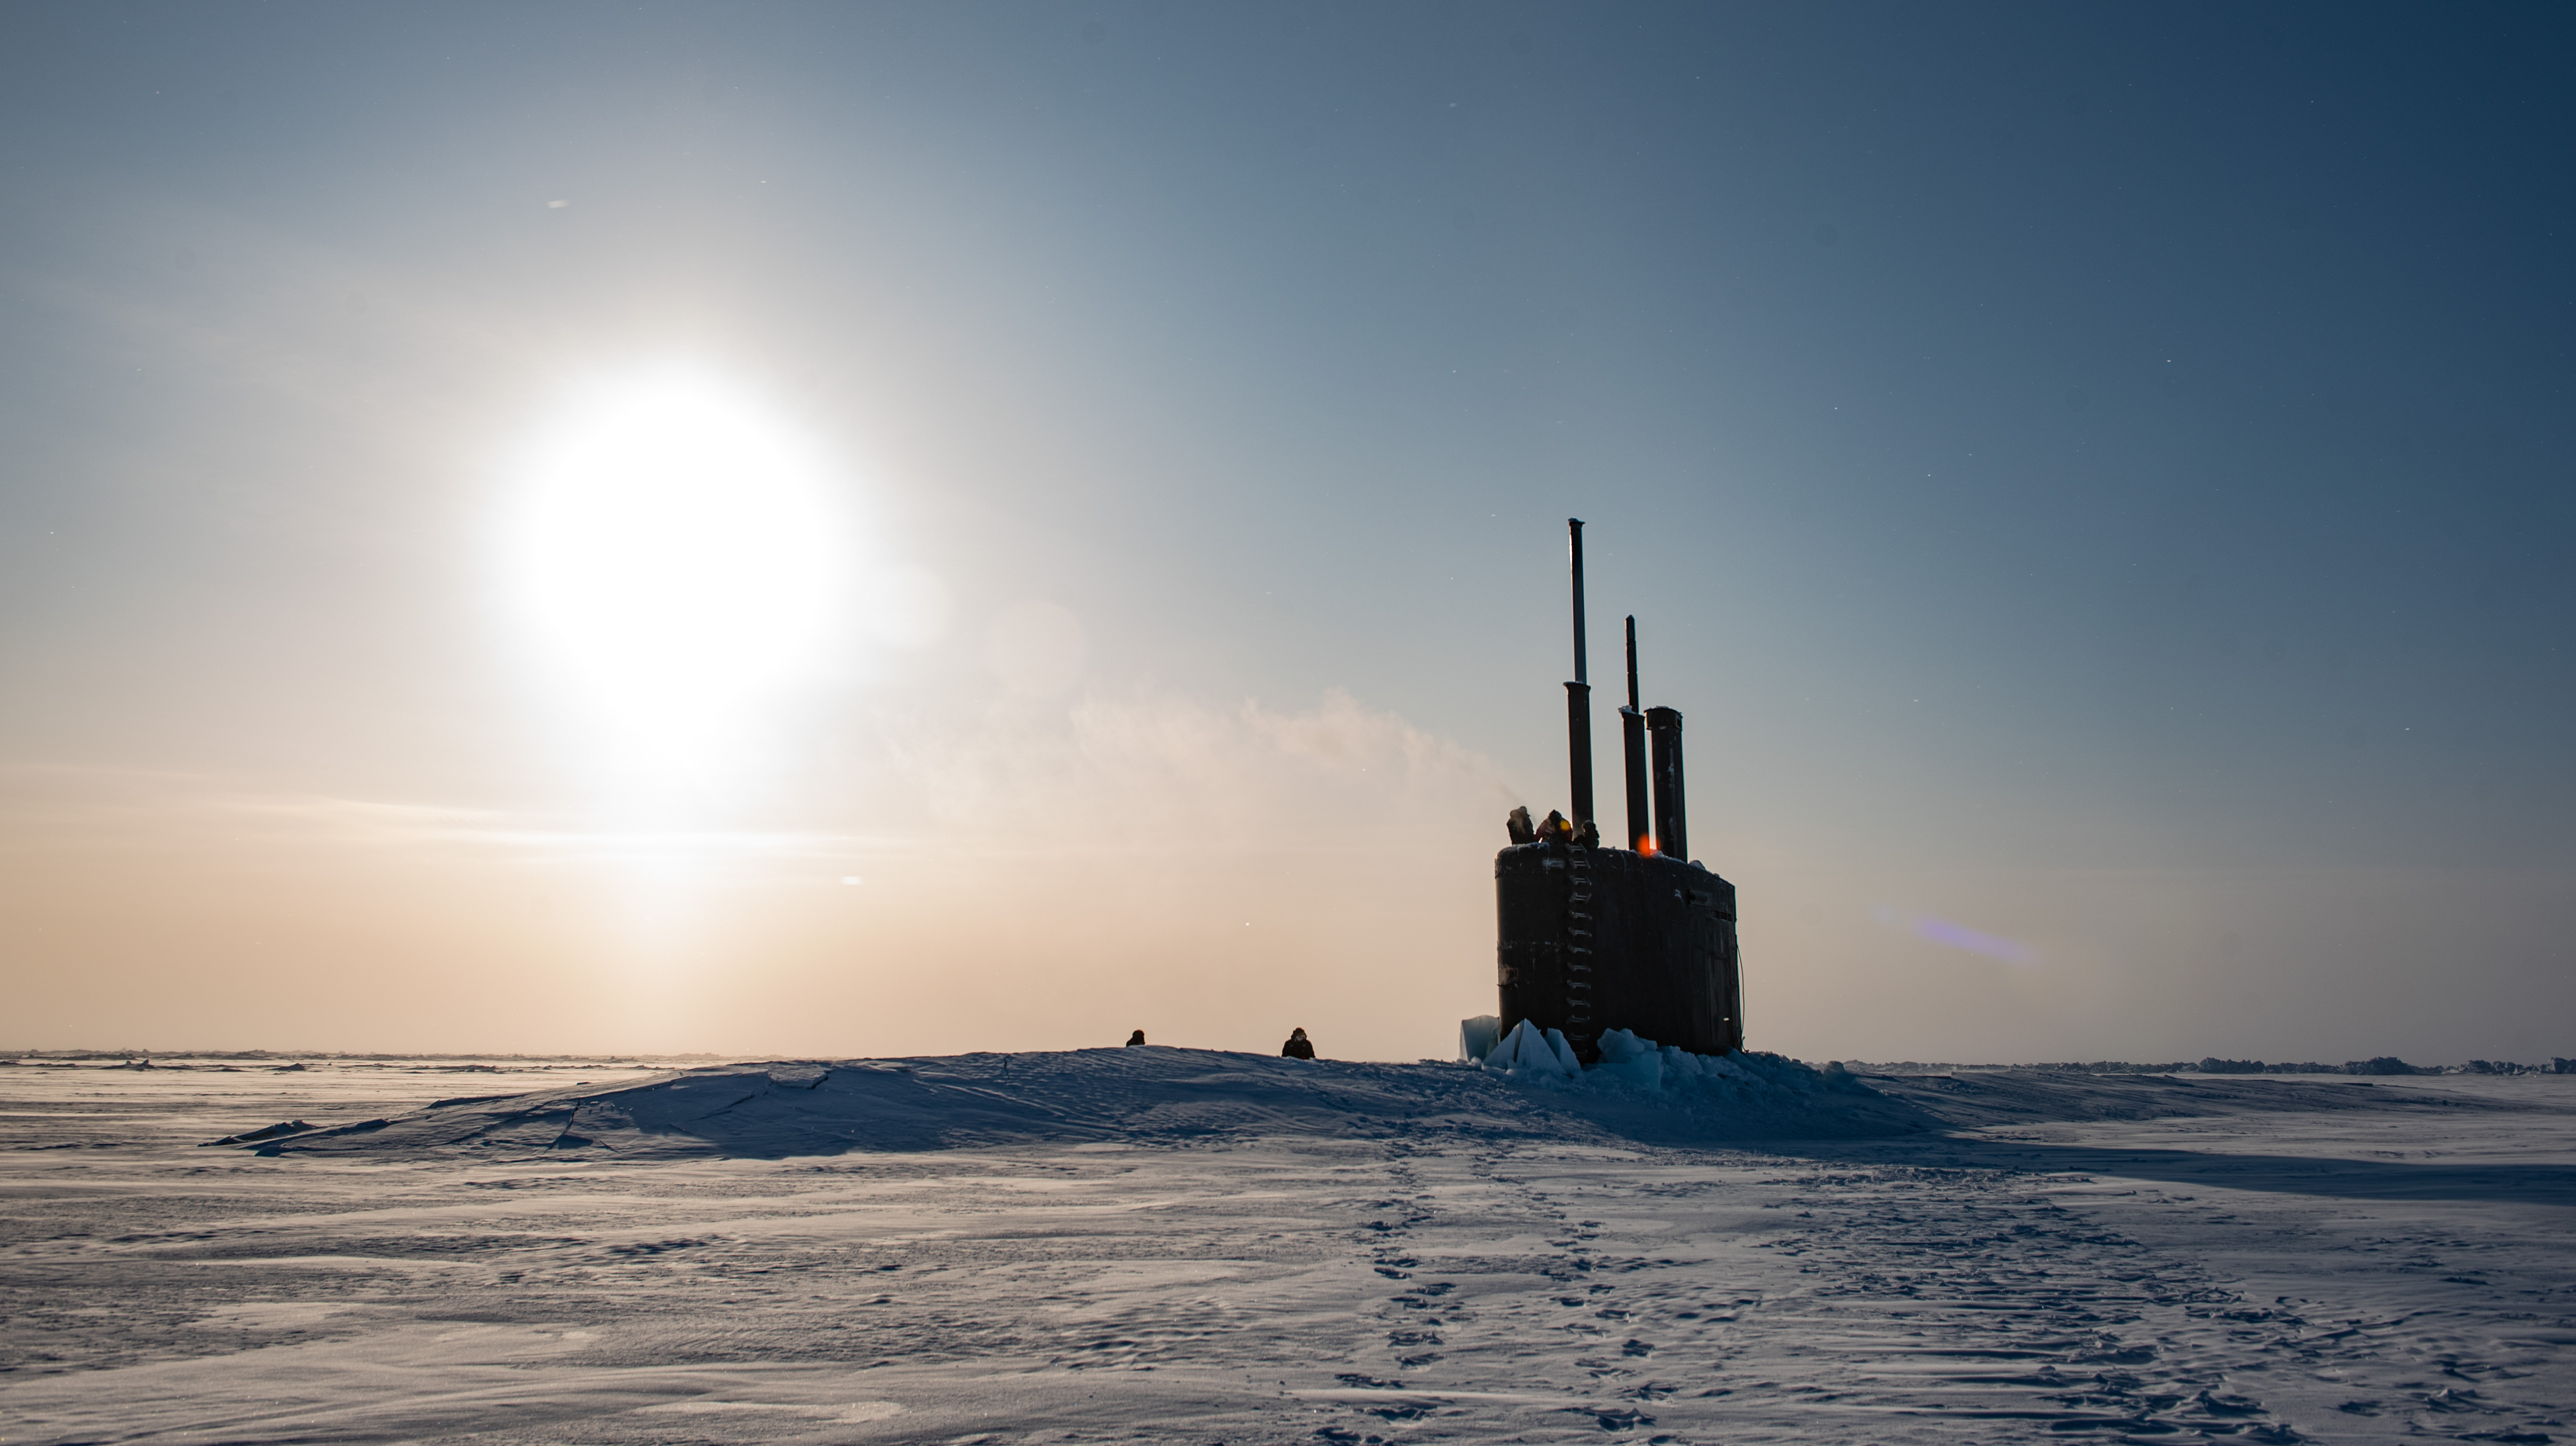 Подъем на поверхность в ледяных полях Арктики американской многоцелевой атомной подводной лодки USS Toledo (SSN 769), типа  Los Angeles, в рамках учения ICEX 2020, фото сделано 5 марта 2020 года в Северном Ледовитом океане